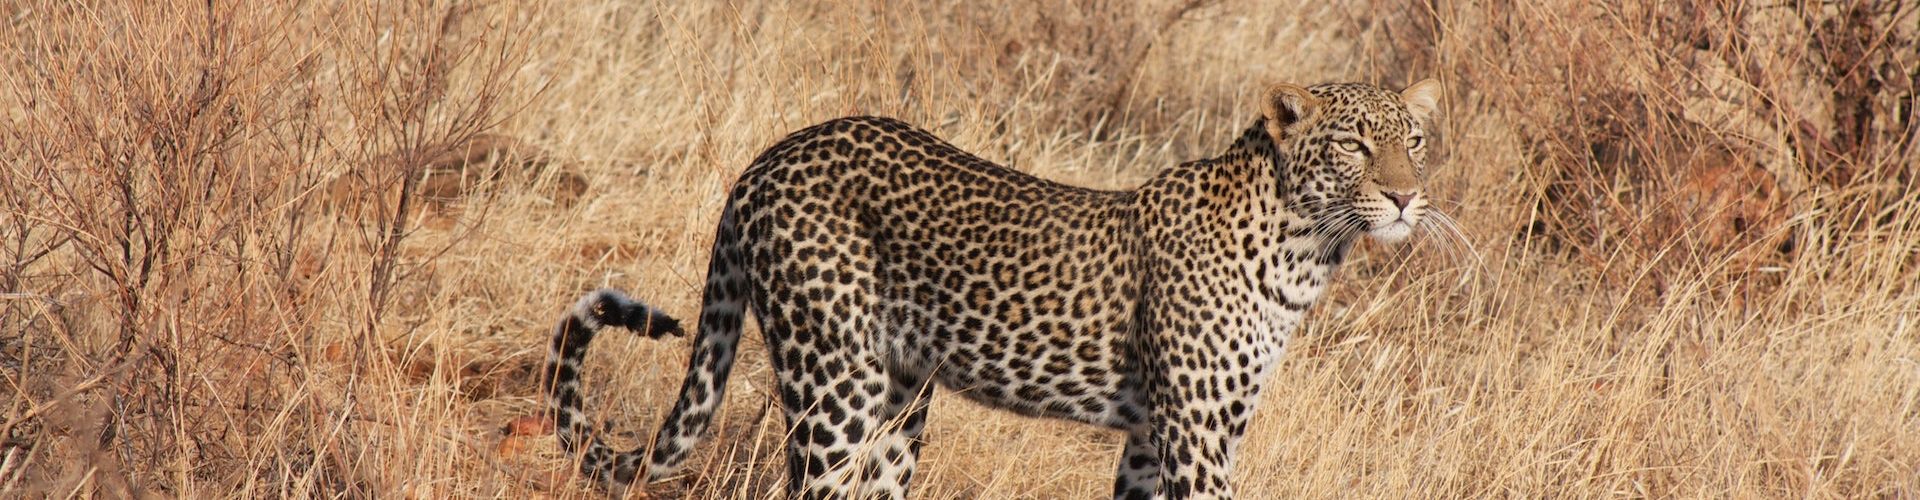 Un léopard dans la zone de gestion de la faune sauvage d'Ikoma